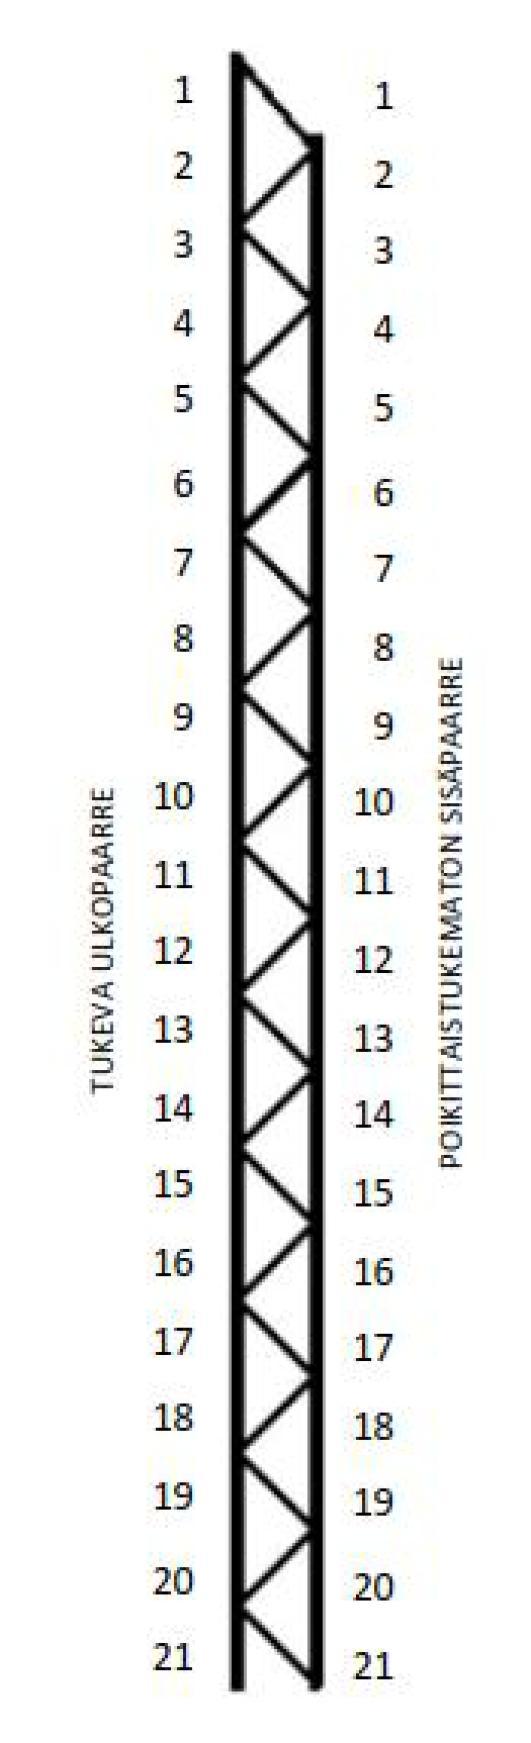 81 Taulukko 4.12 28 metriä korkean ristikkopilarin K-liitoksiin kertyvien momenttien arvot ulko- ja sisäpaarteissa. Lisäksi oikealla havainnollistava kuva, mistä momenttien arvot on luettu.